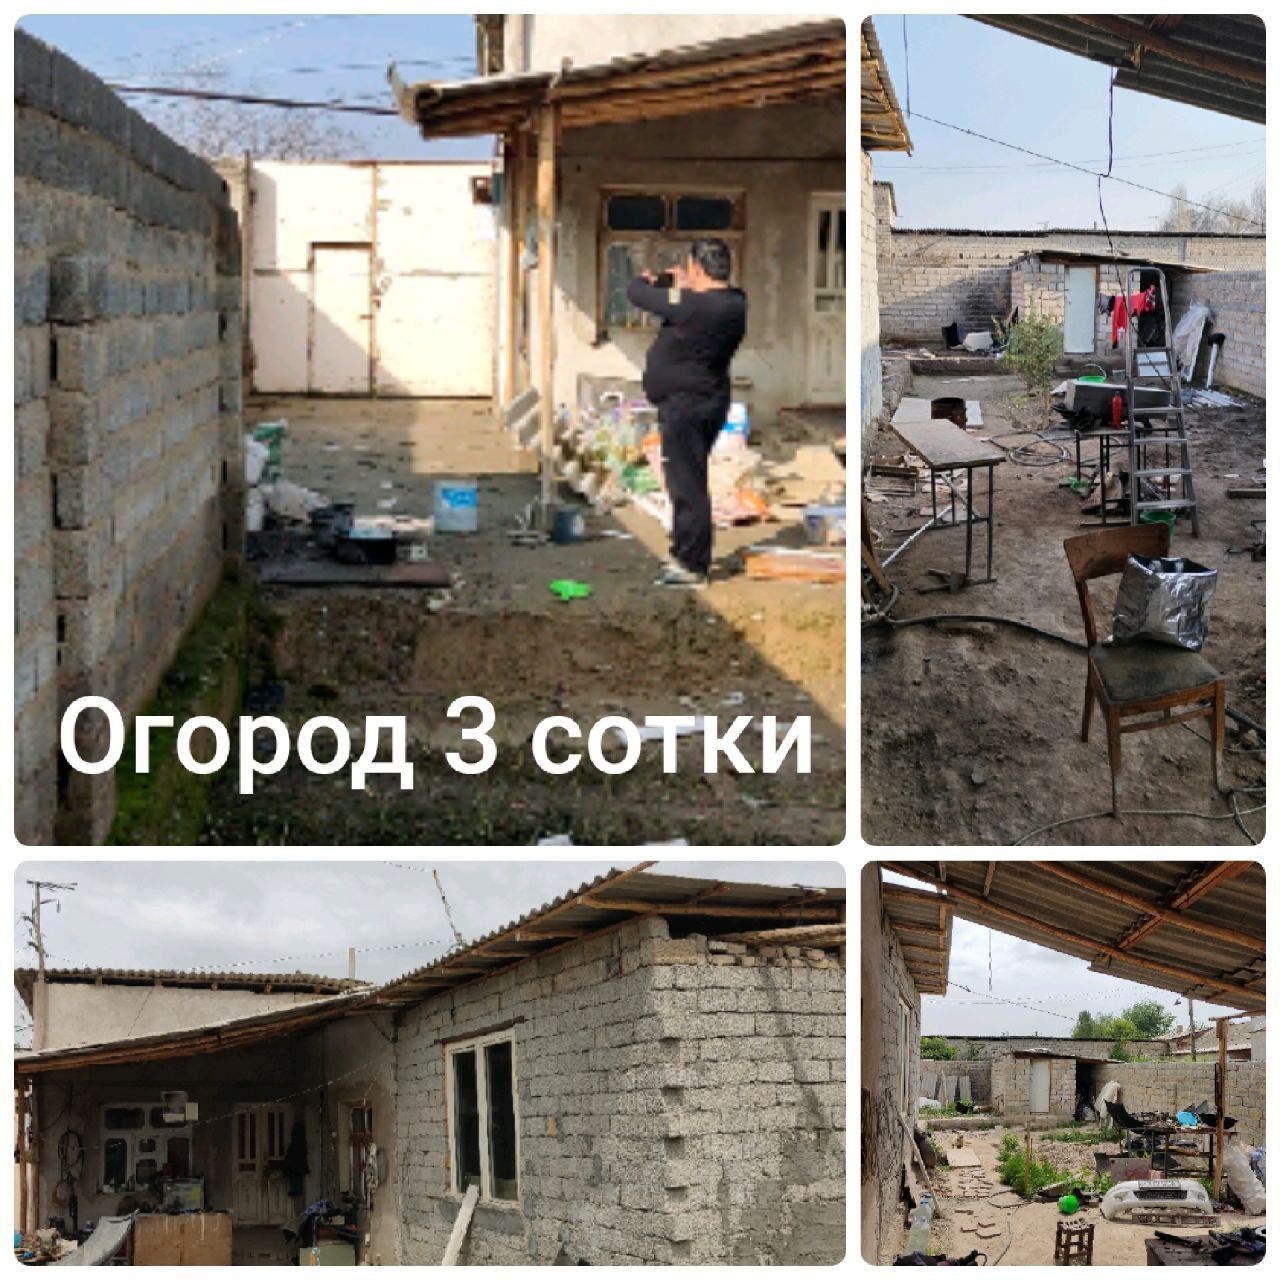 Продаётся дом зангиатай посёлок Богзор 3 километра от Сергели